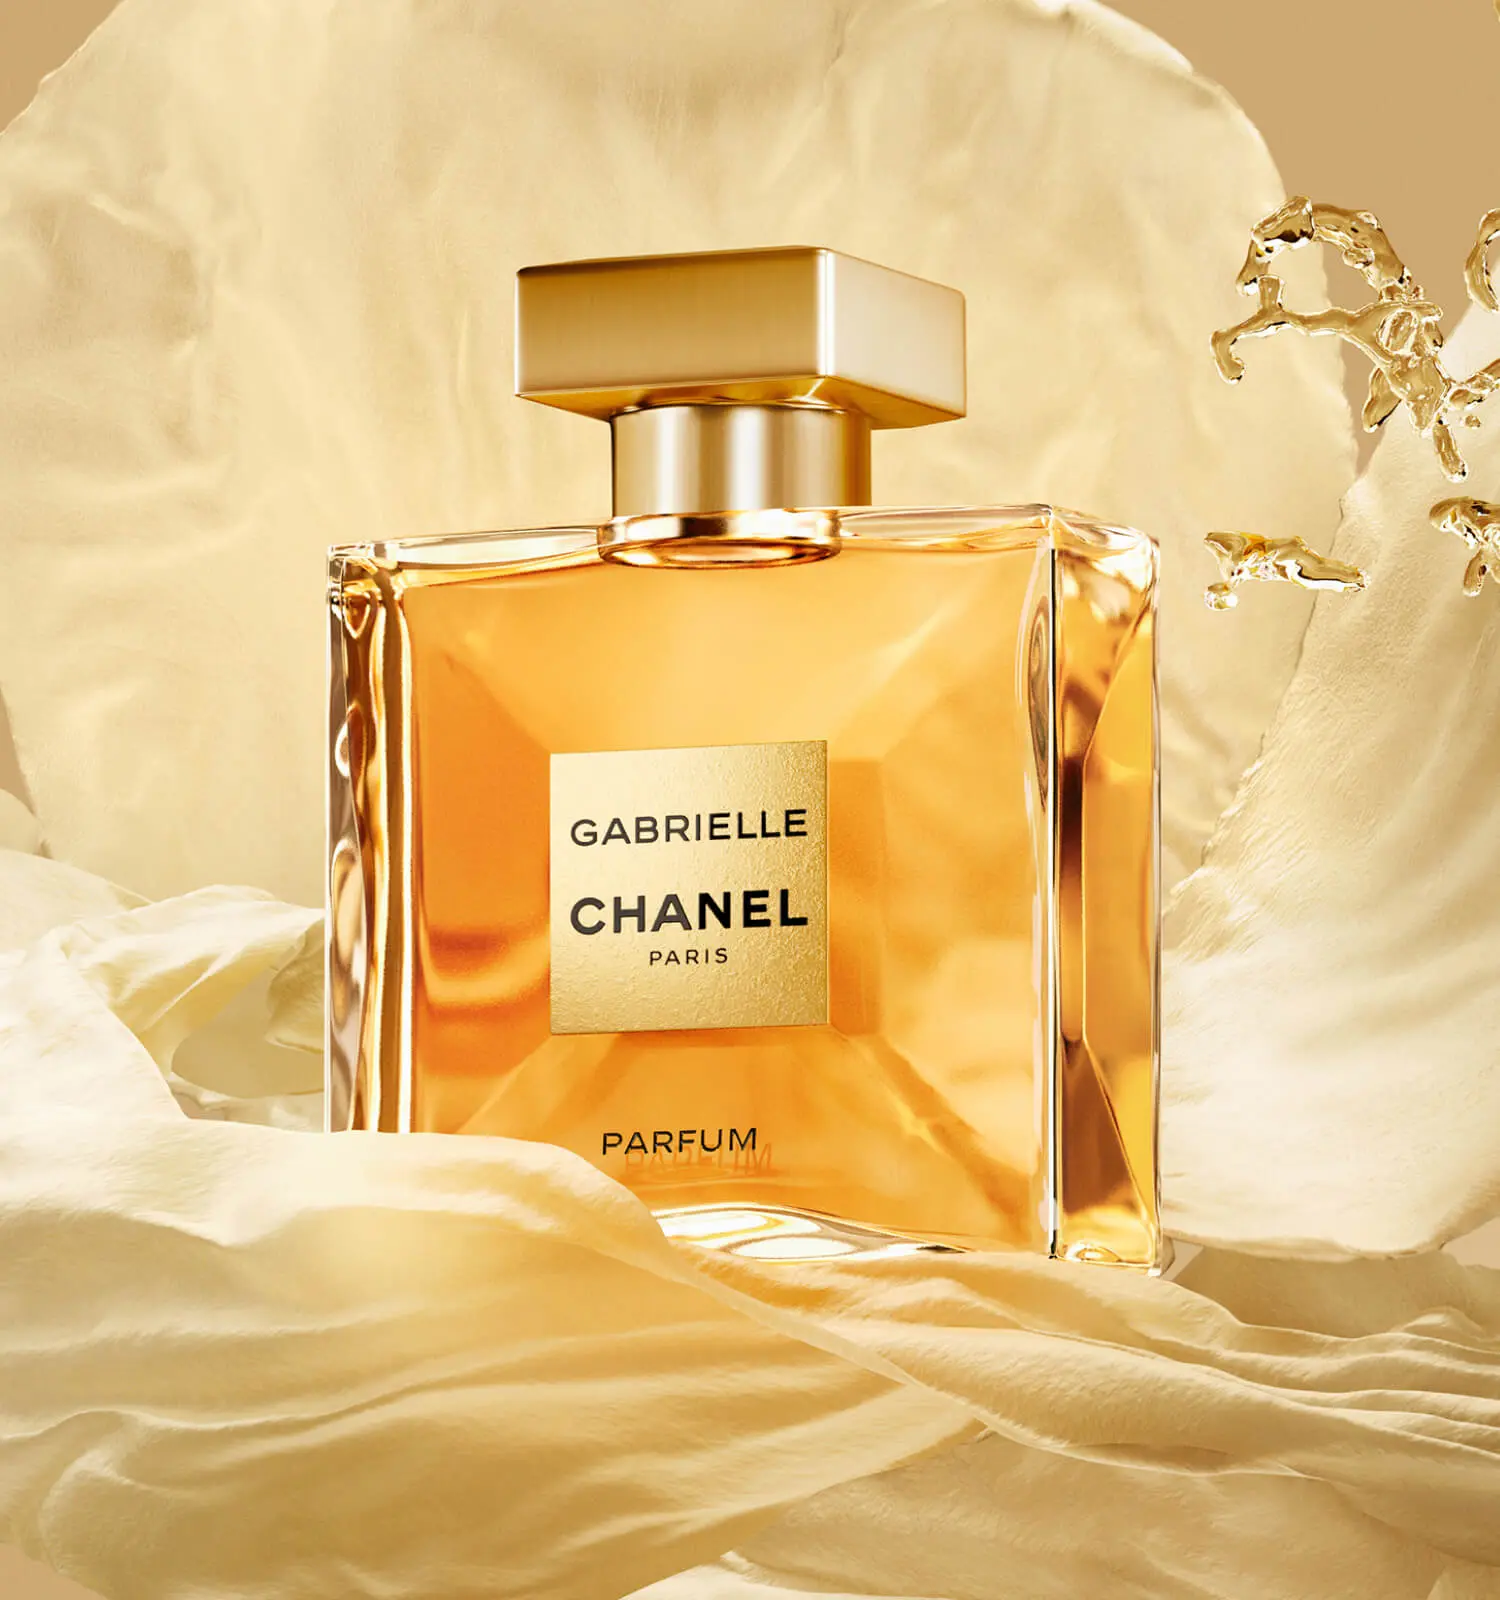 notas del perfume gabrielle de chanel - Qué aroma tiene el perfume Gabrielle Chanel